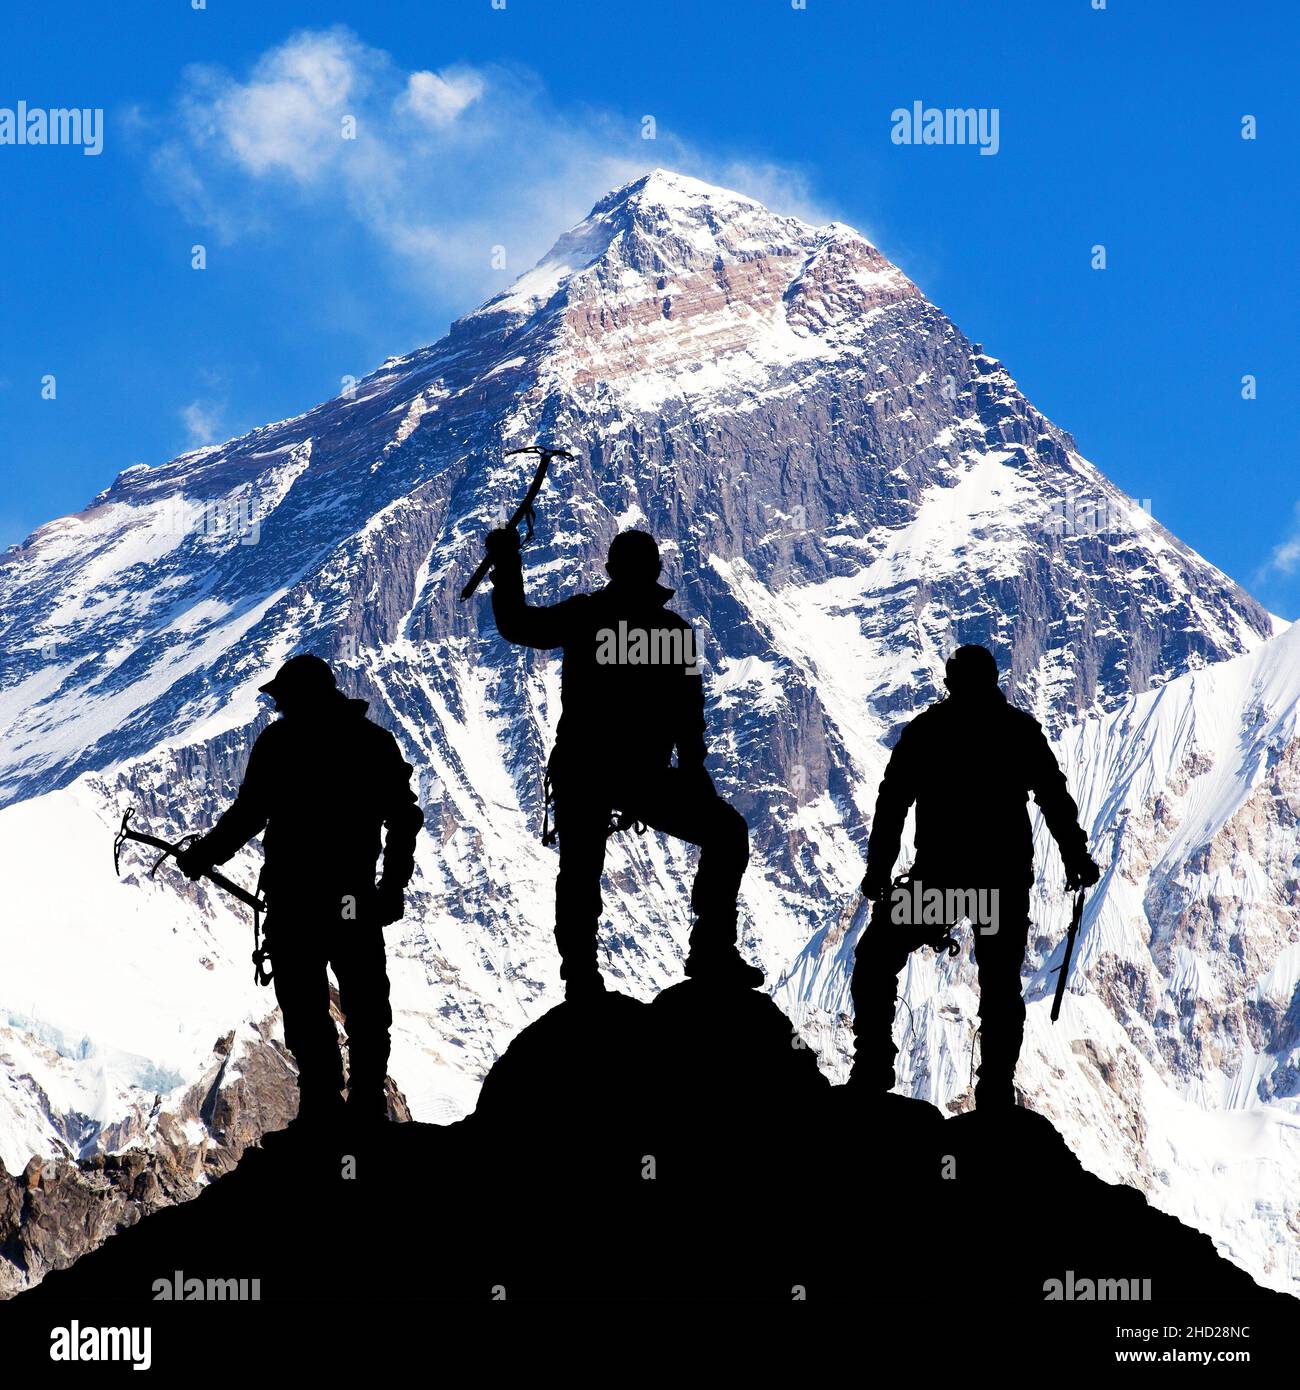 Monte Everest con silhouette nera di tre arrampicatori con ascia di ghiaccio in mano sulla strada per l'Everest campo base, valle di Khumbu Solukhumbu - Nepal Himalayas Foto Stock